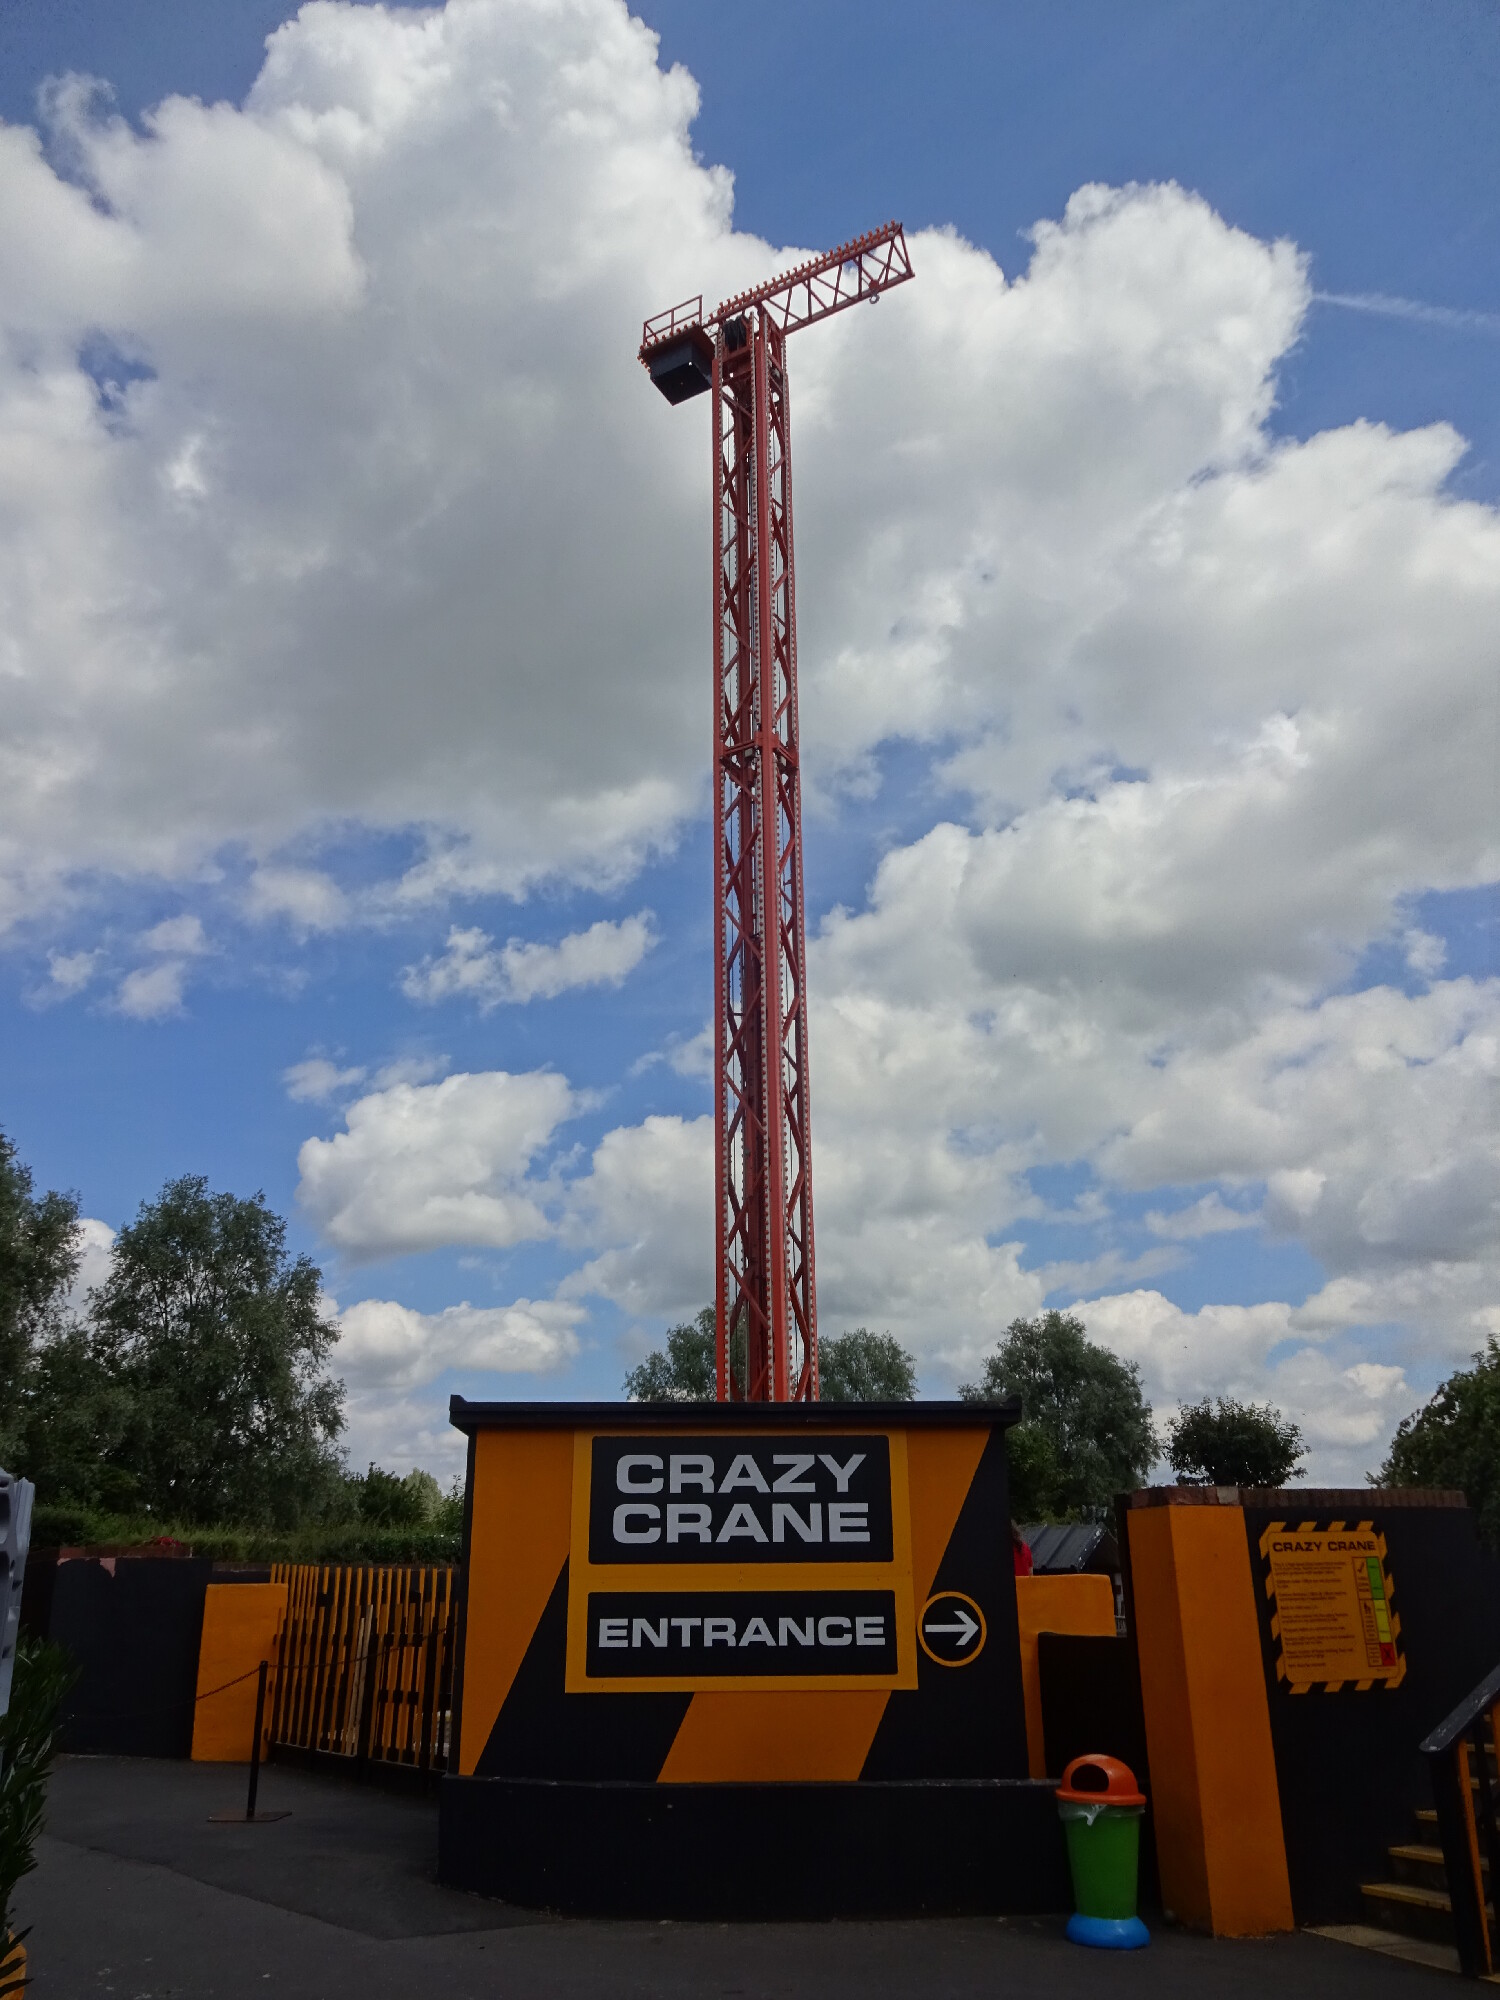 The Crazy Crane